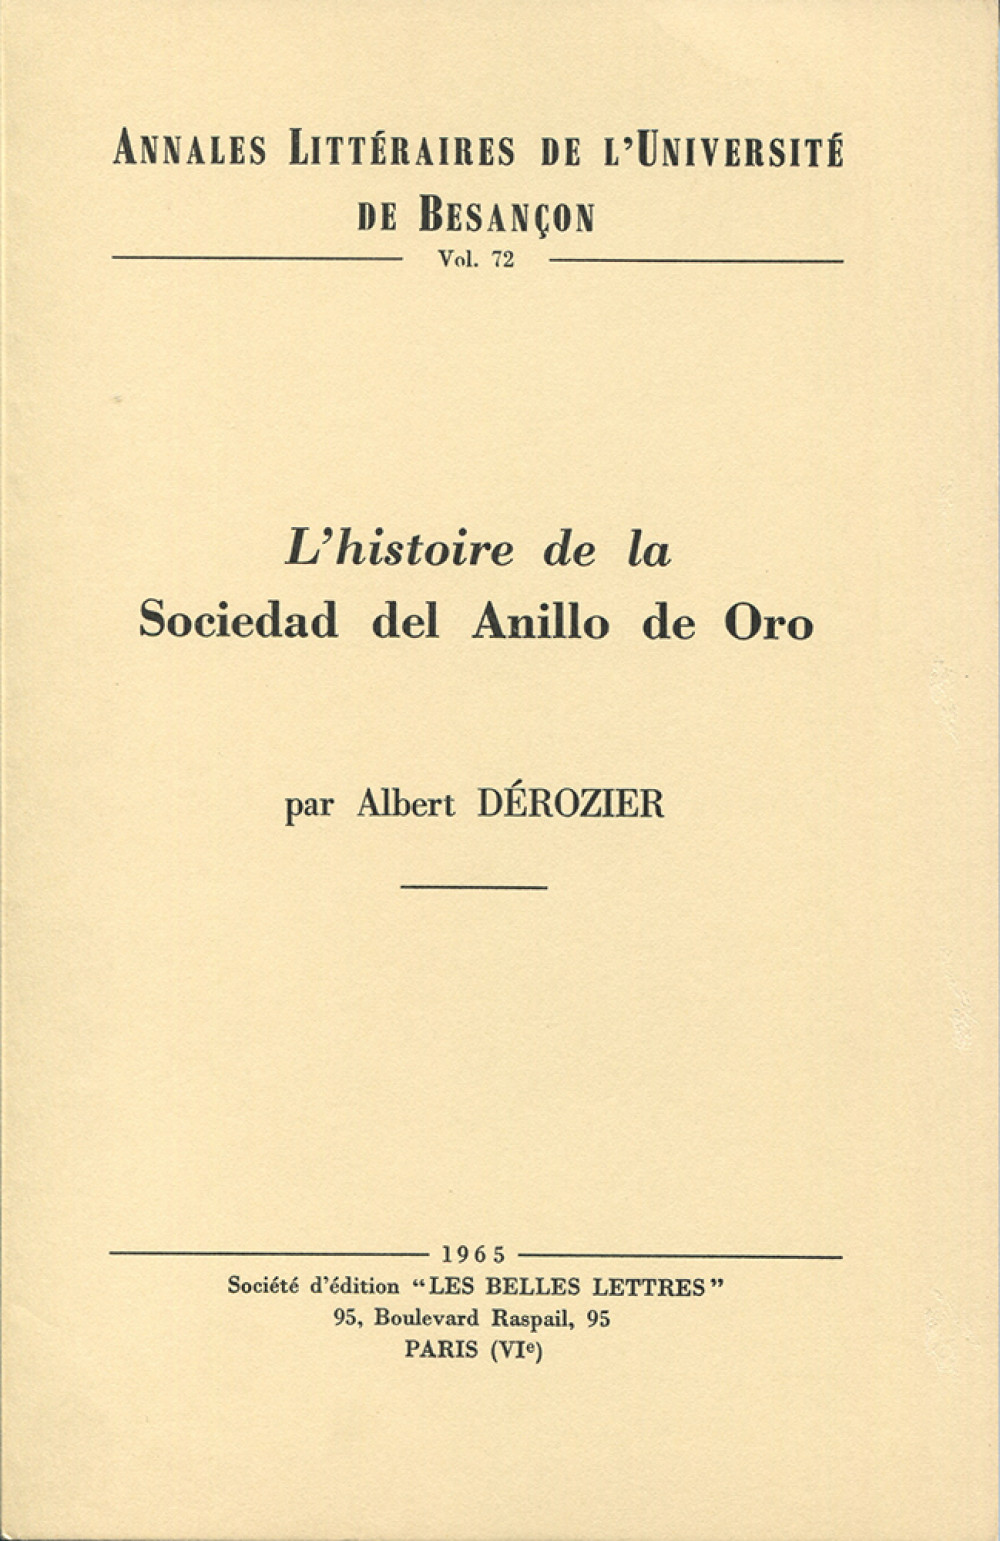 L'histoire de la Sociedad del Anillo de Oro pendant le triennat constitutionnel 1820-1823